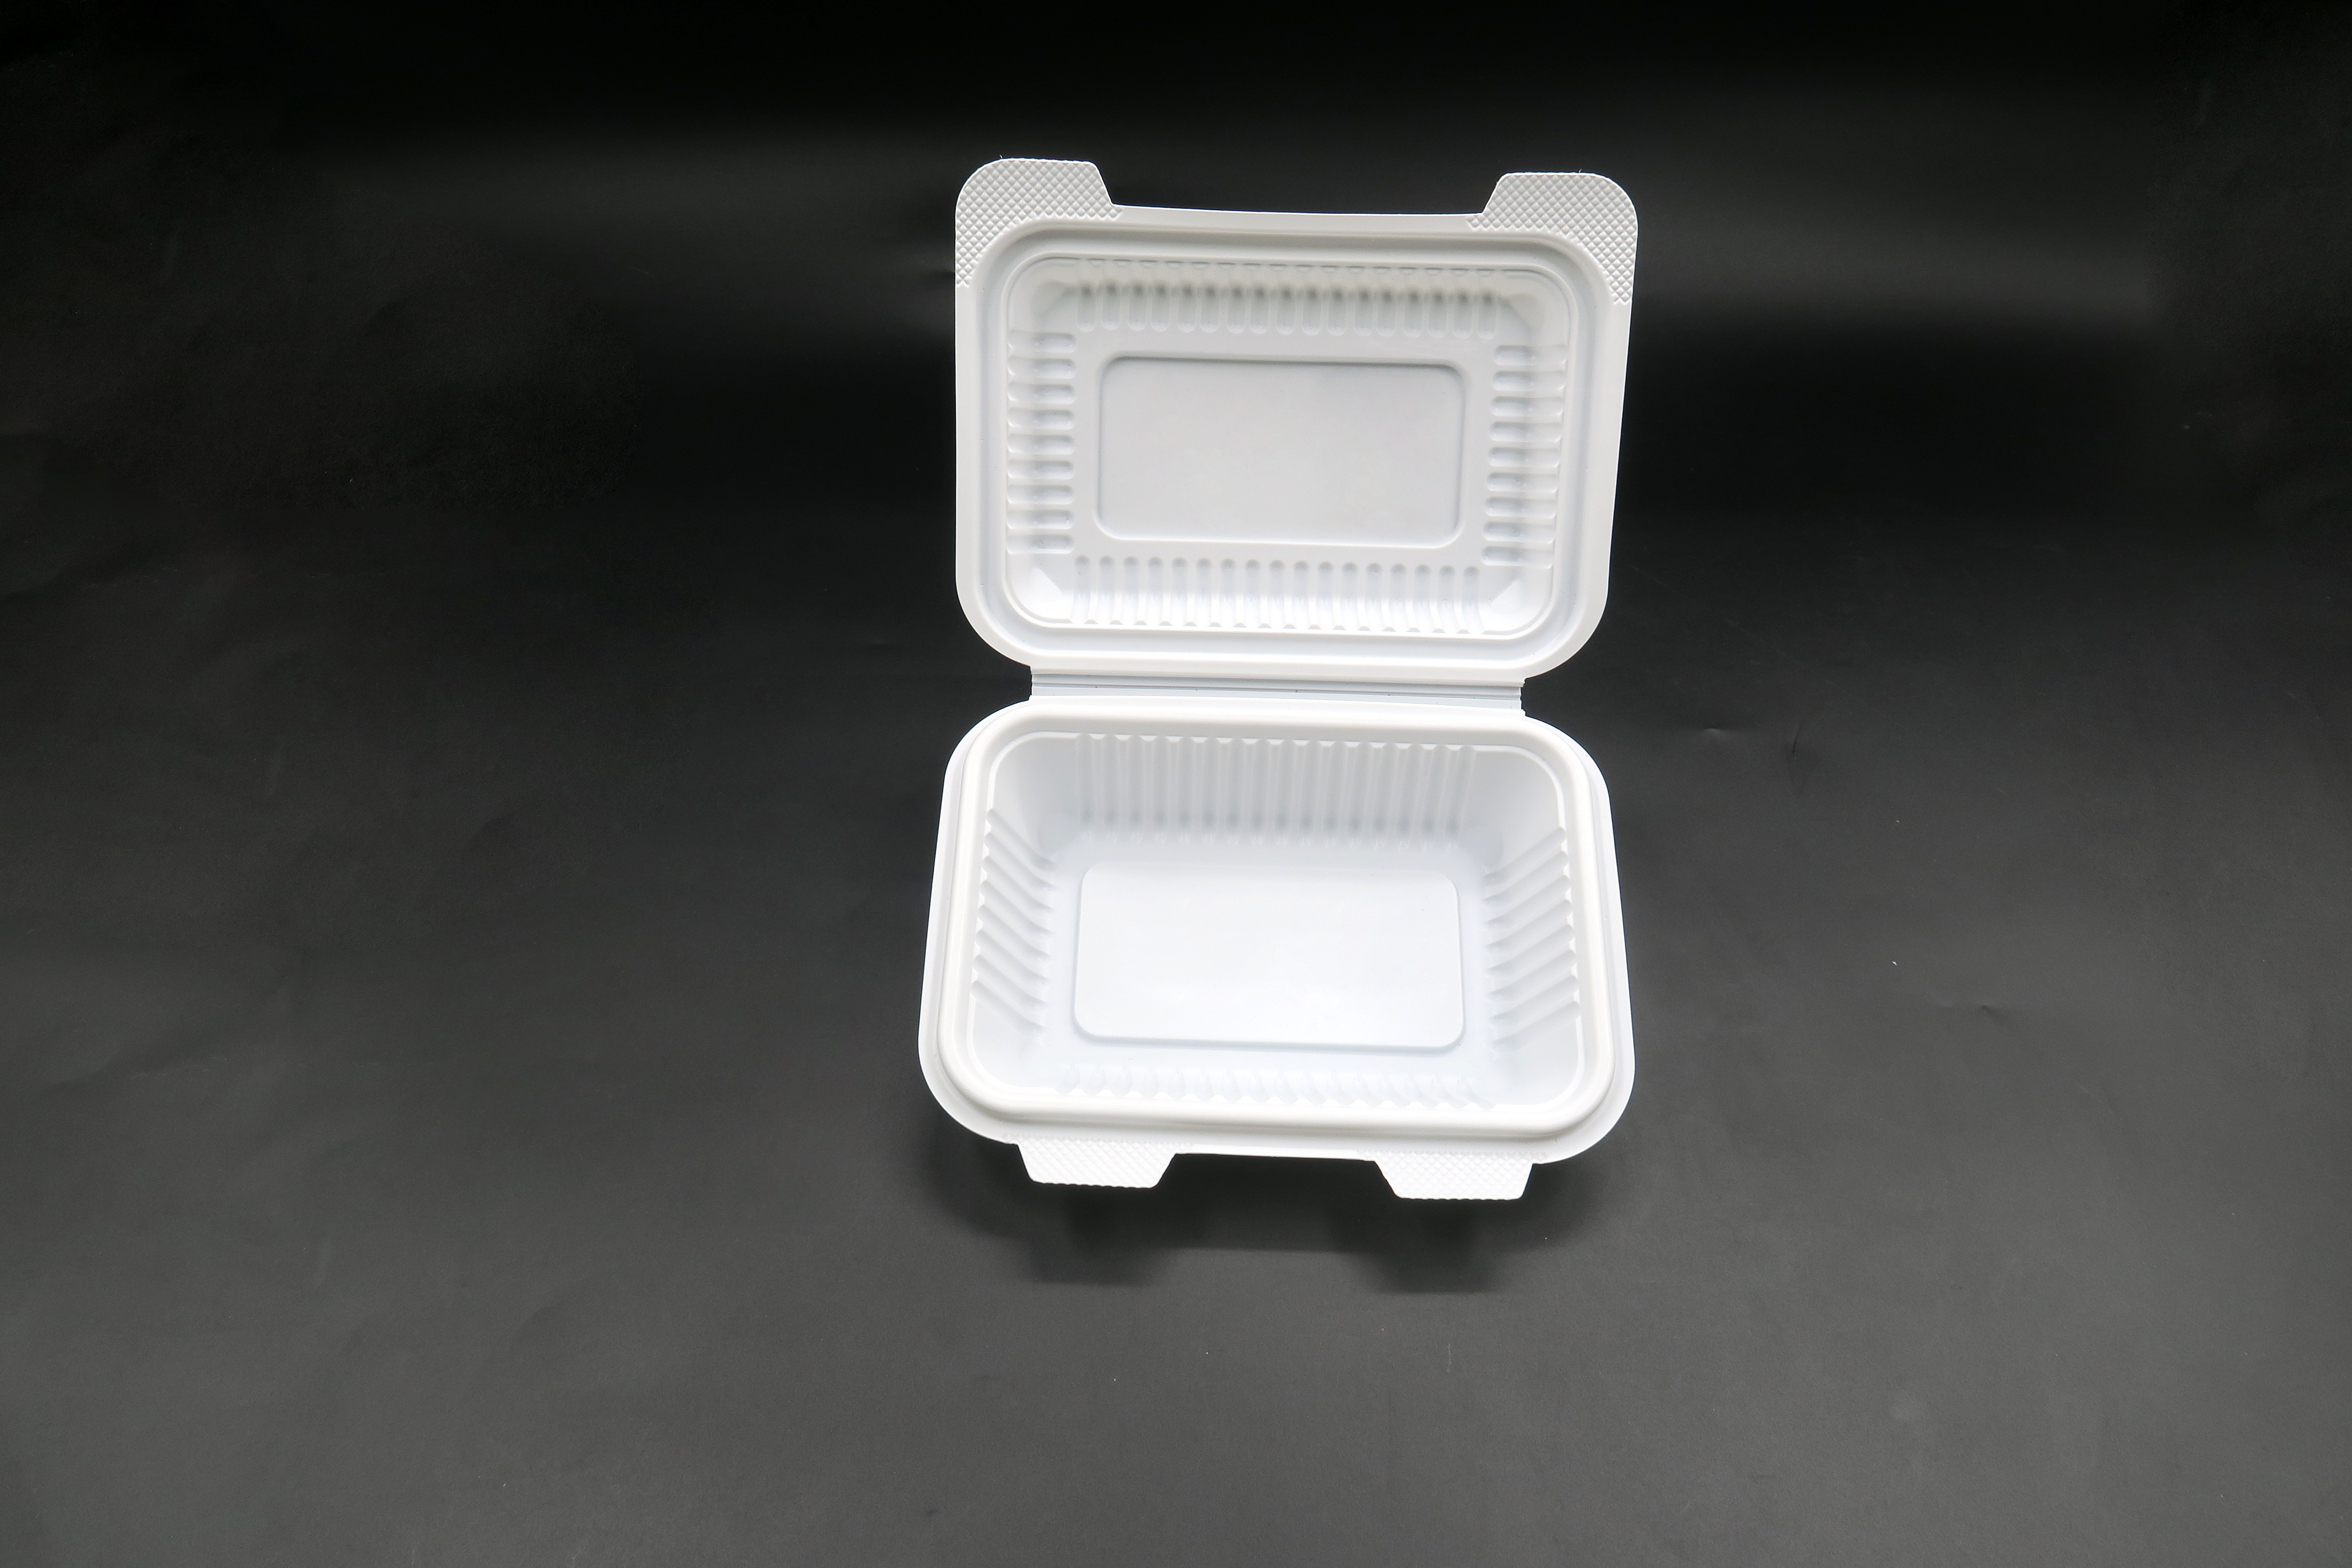 Clamshell-Verpackungsbehälter zum Mitnehmen, Lunchbox